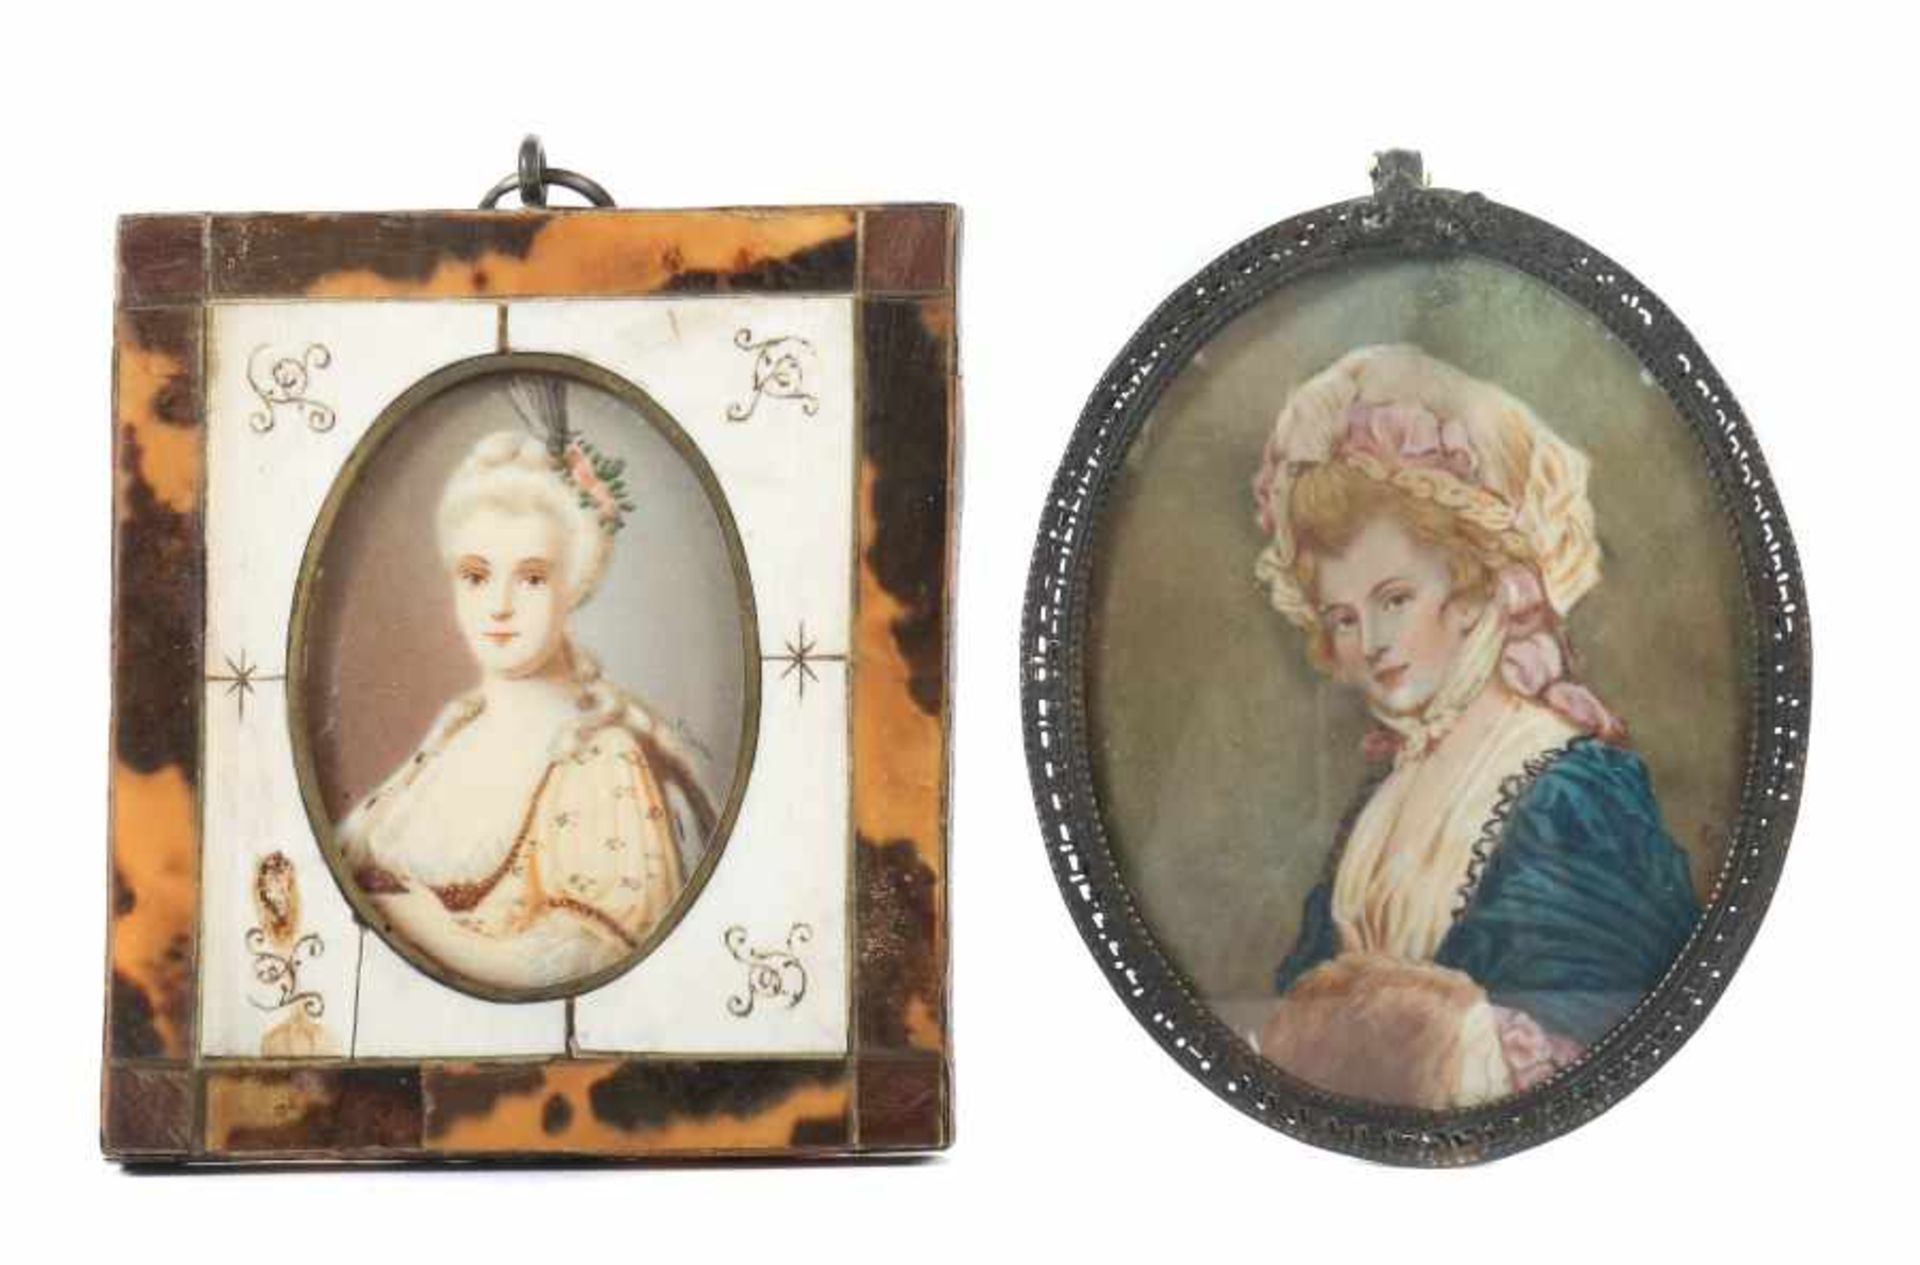 Bildnisminiaturenpaar 18./19. Jh.2 Darstellungen "Elegante Dame", 1x mit grünem Kleid und Muff,